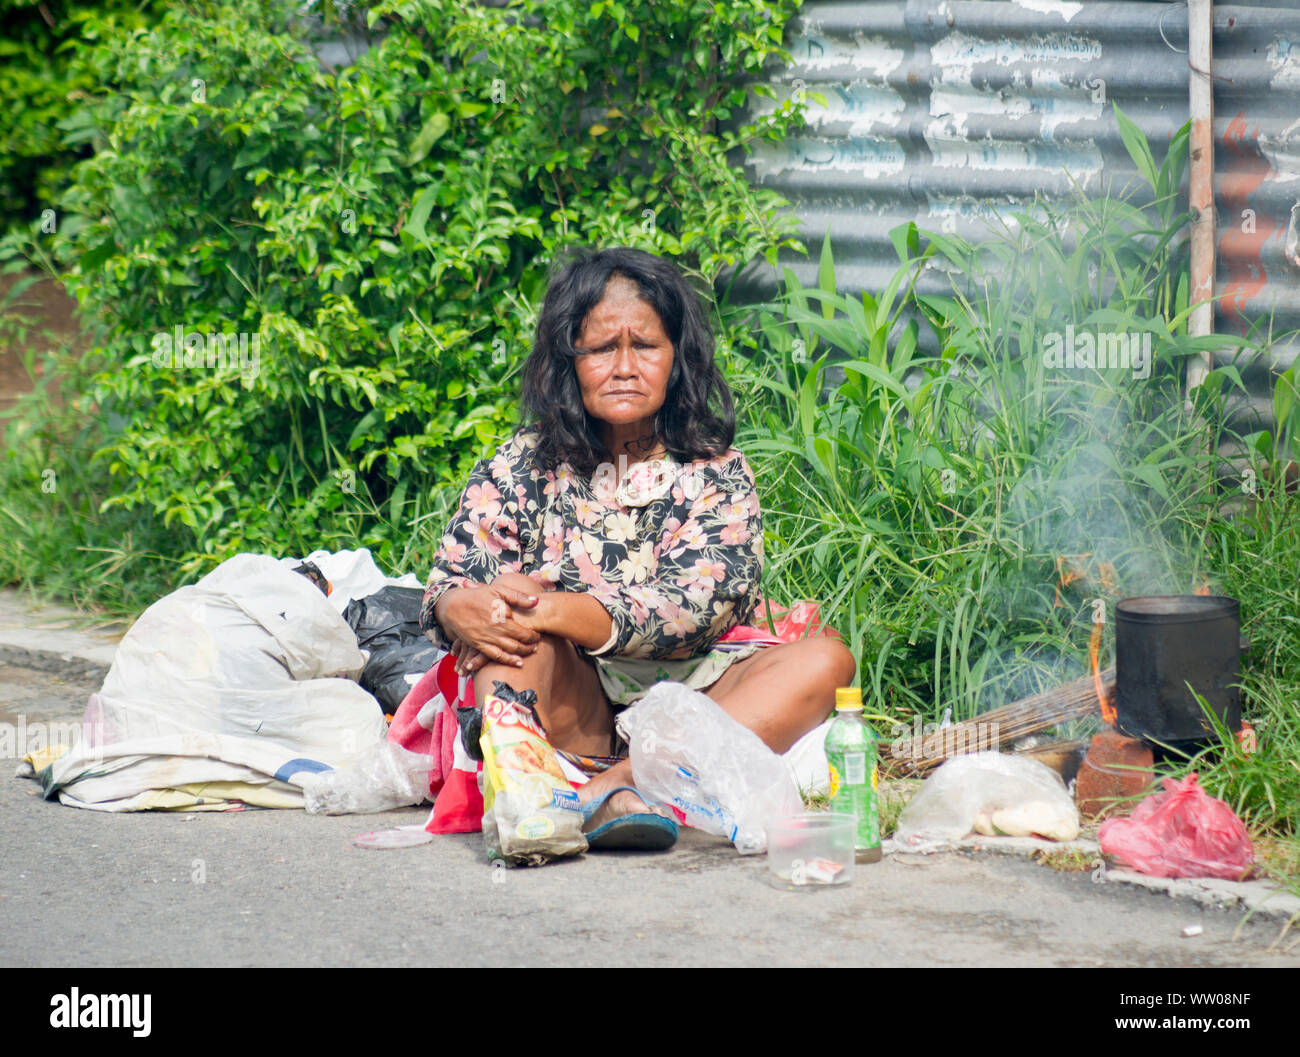 Sans-abri, la pauvreté, Yogyakarta, Java, Indonésie, 2013 Banque D'Images